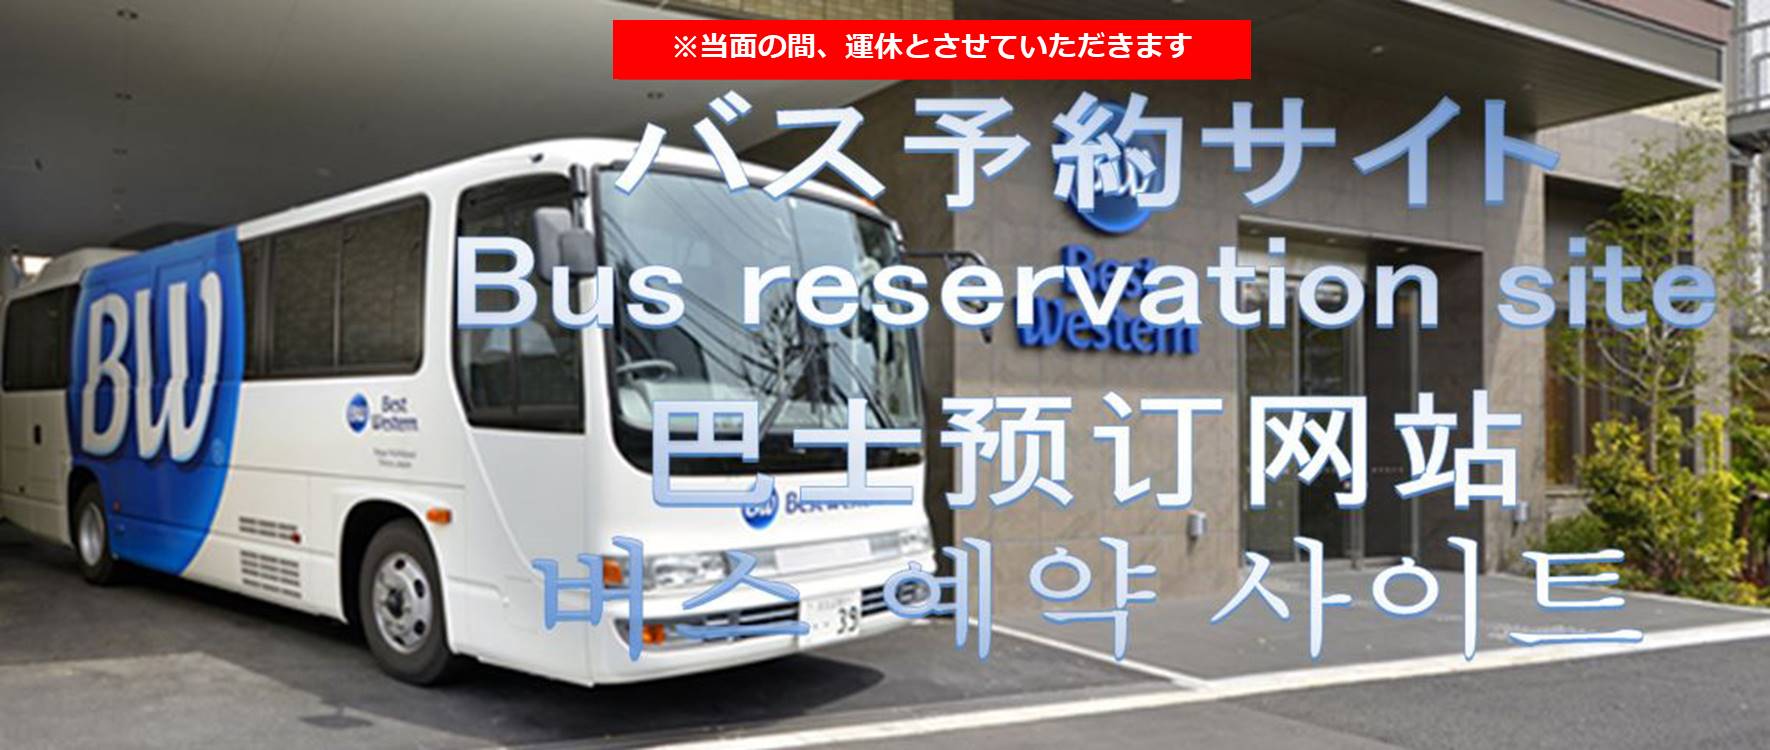 Tdr無料送迎バス 当面の間運休とさせていただきます ベストウェスタン東京西葛西 公式